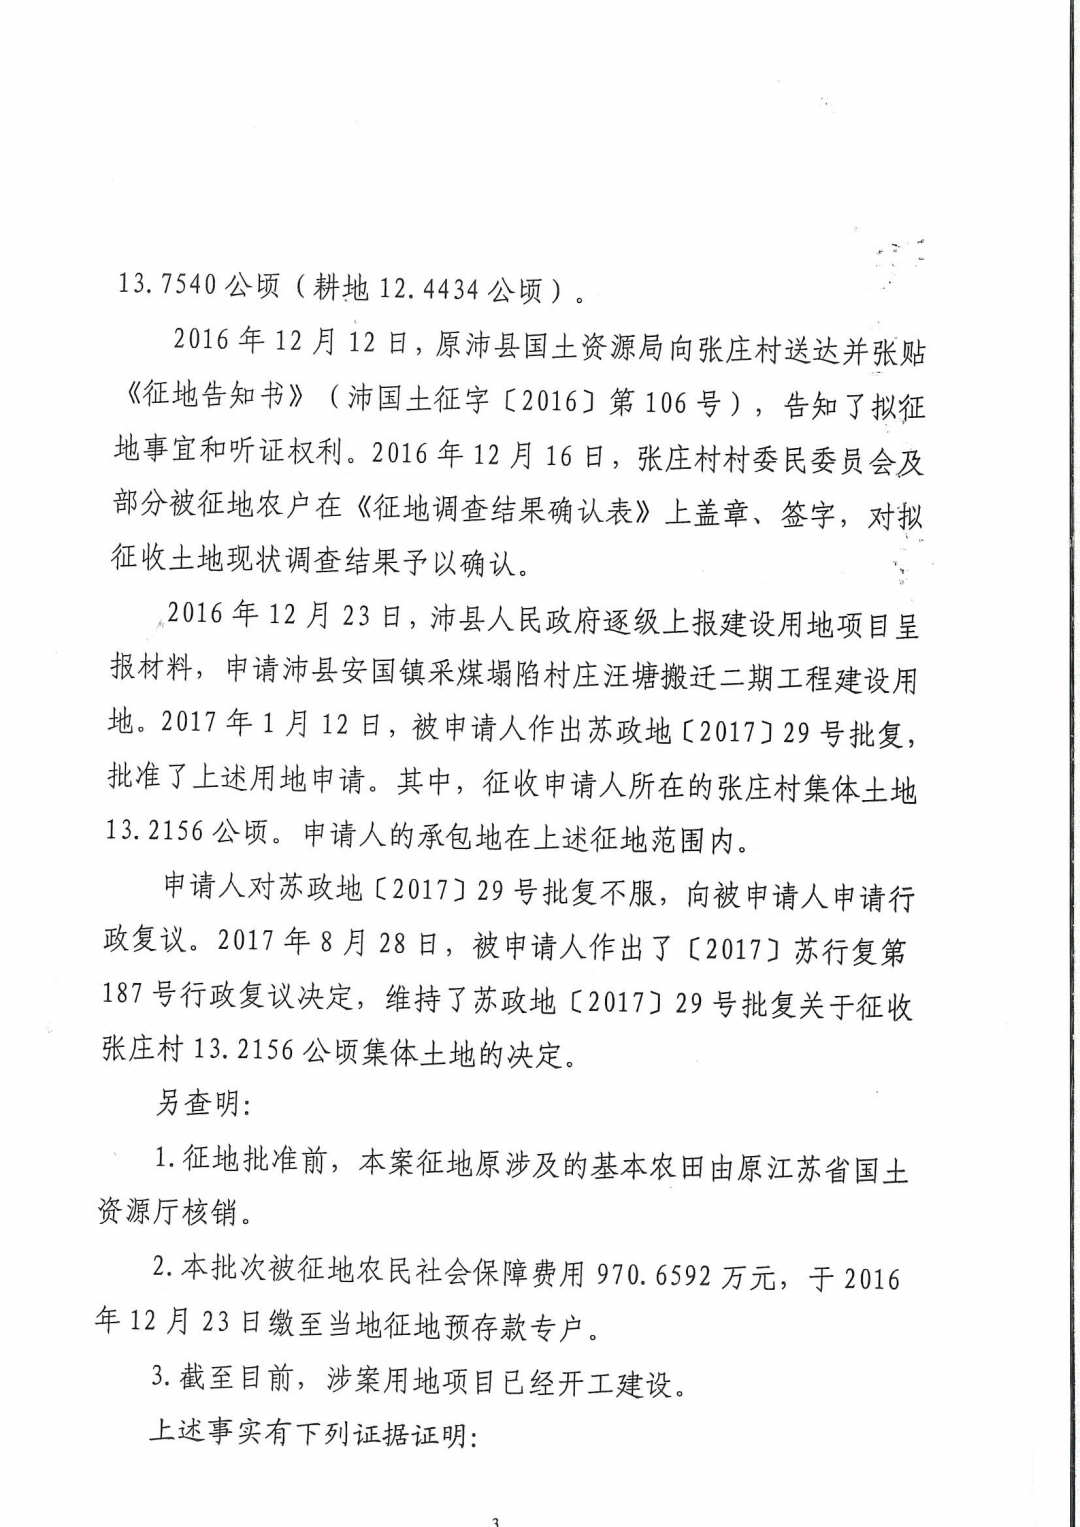 【江苏】省政府征地批复被国务院裁决确认违法！